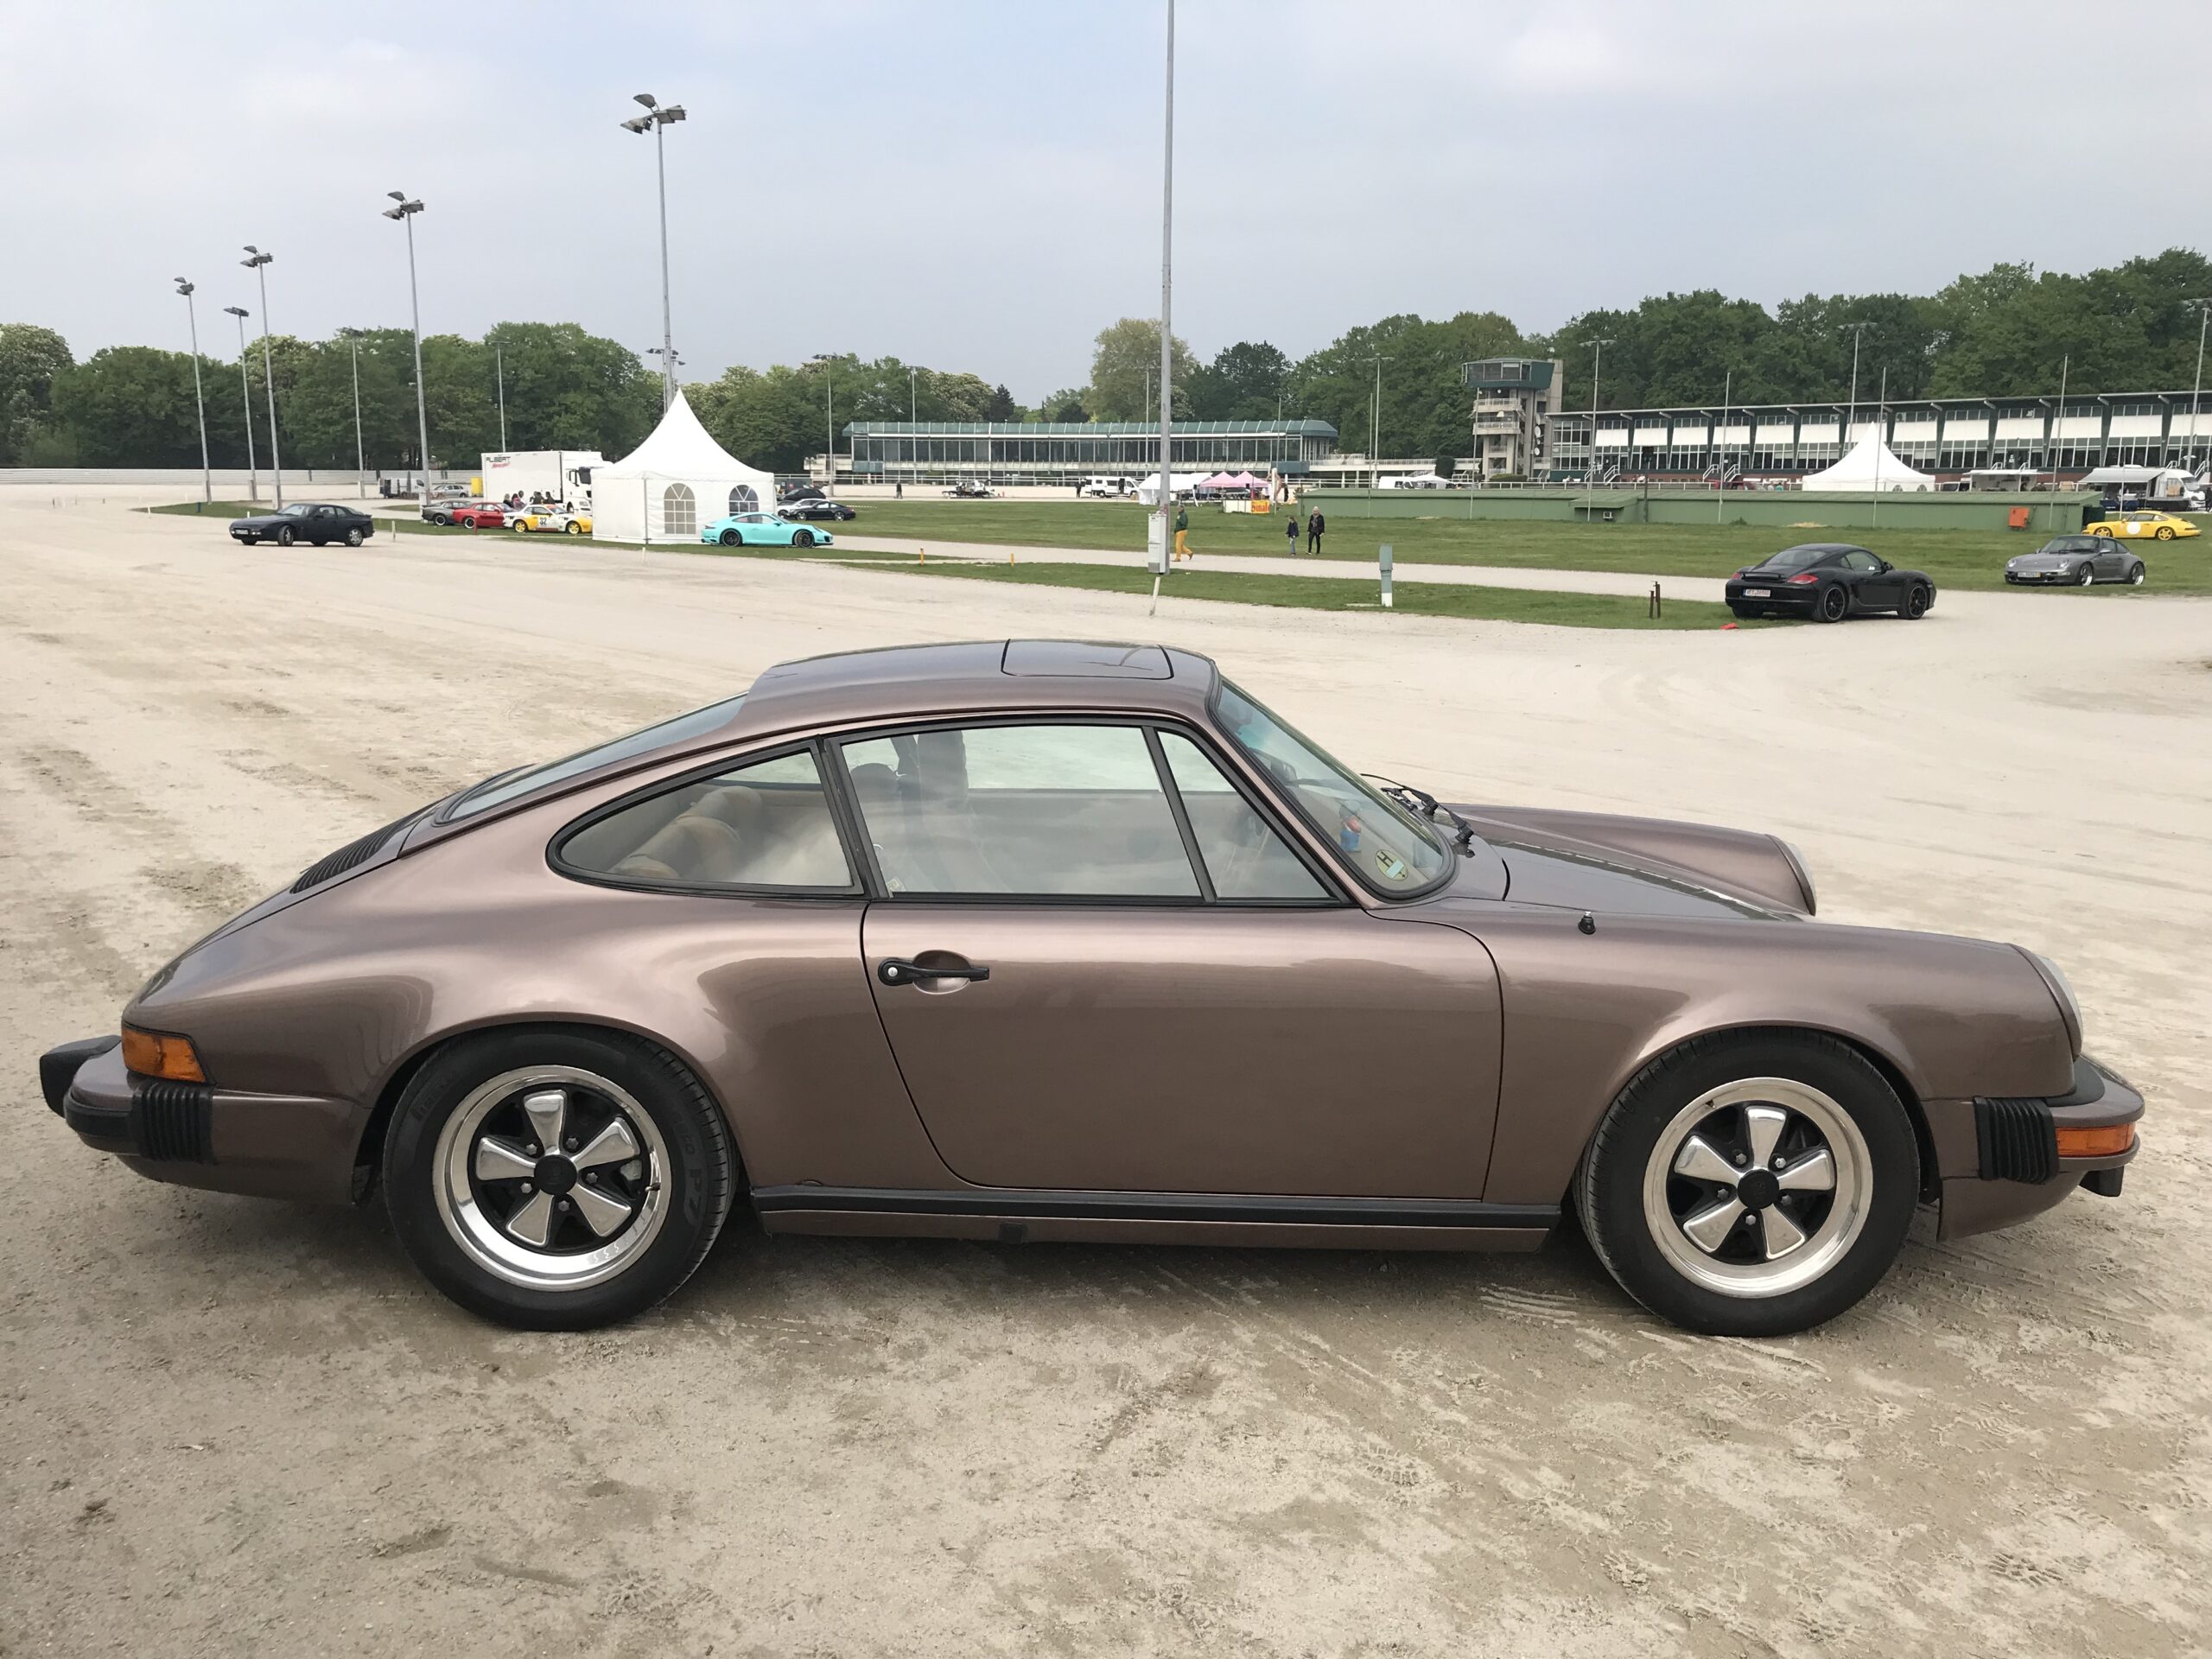 Erneut Porsche-Oldie aus Tiefgarage in Hamm gestohlen